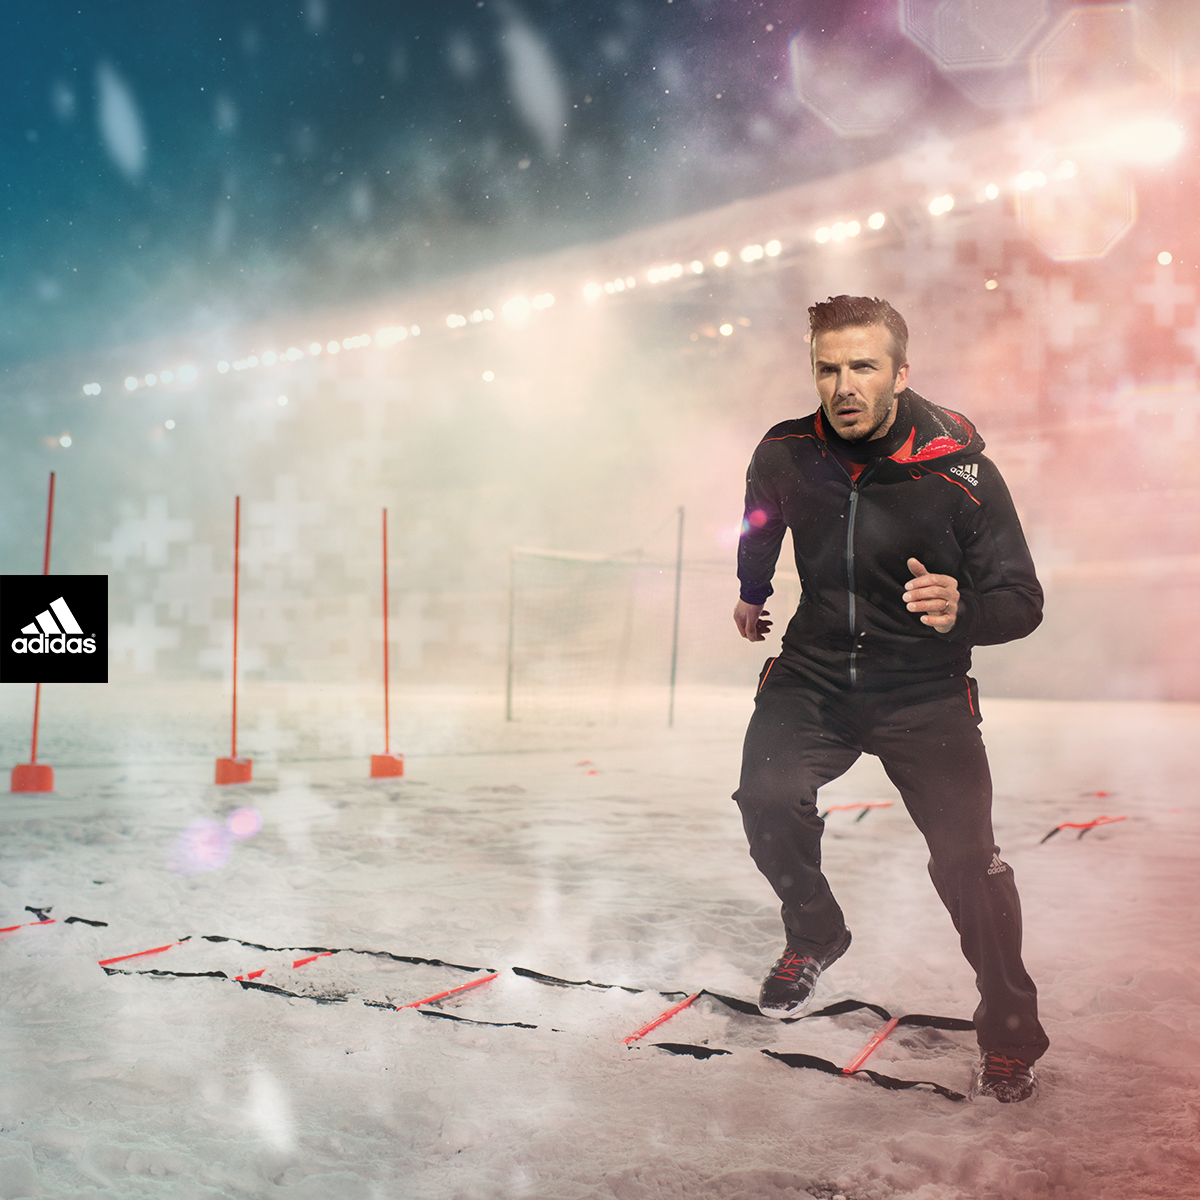 Дэвид Бекхэм в экипировке adidas Climawarm+ для занятий спортом в холодную погоду